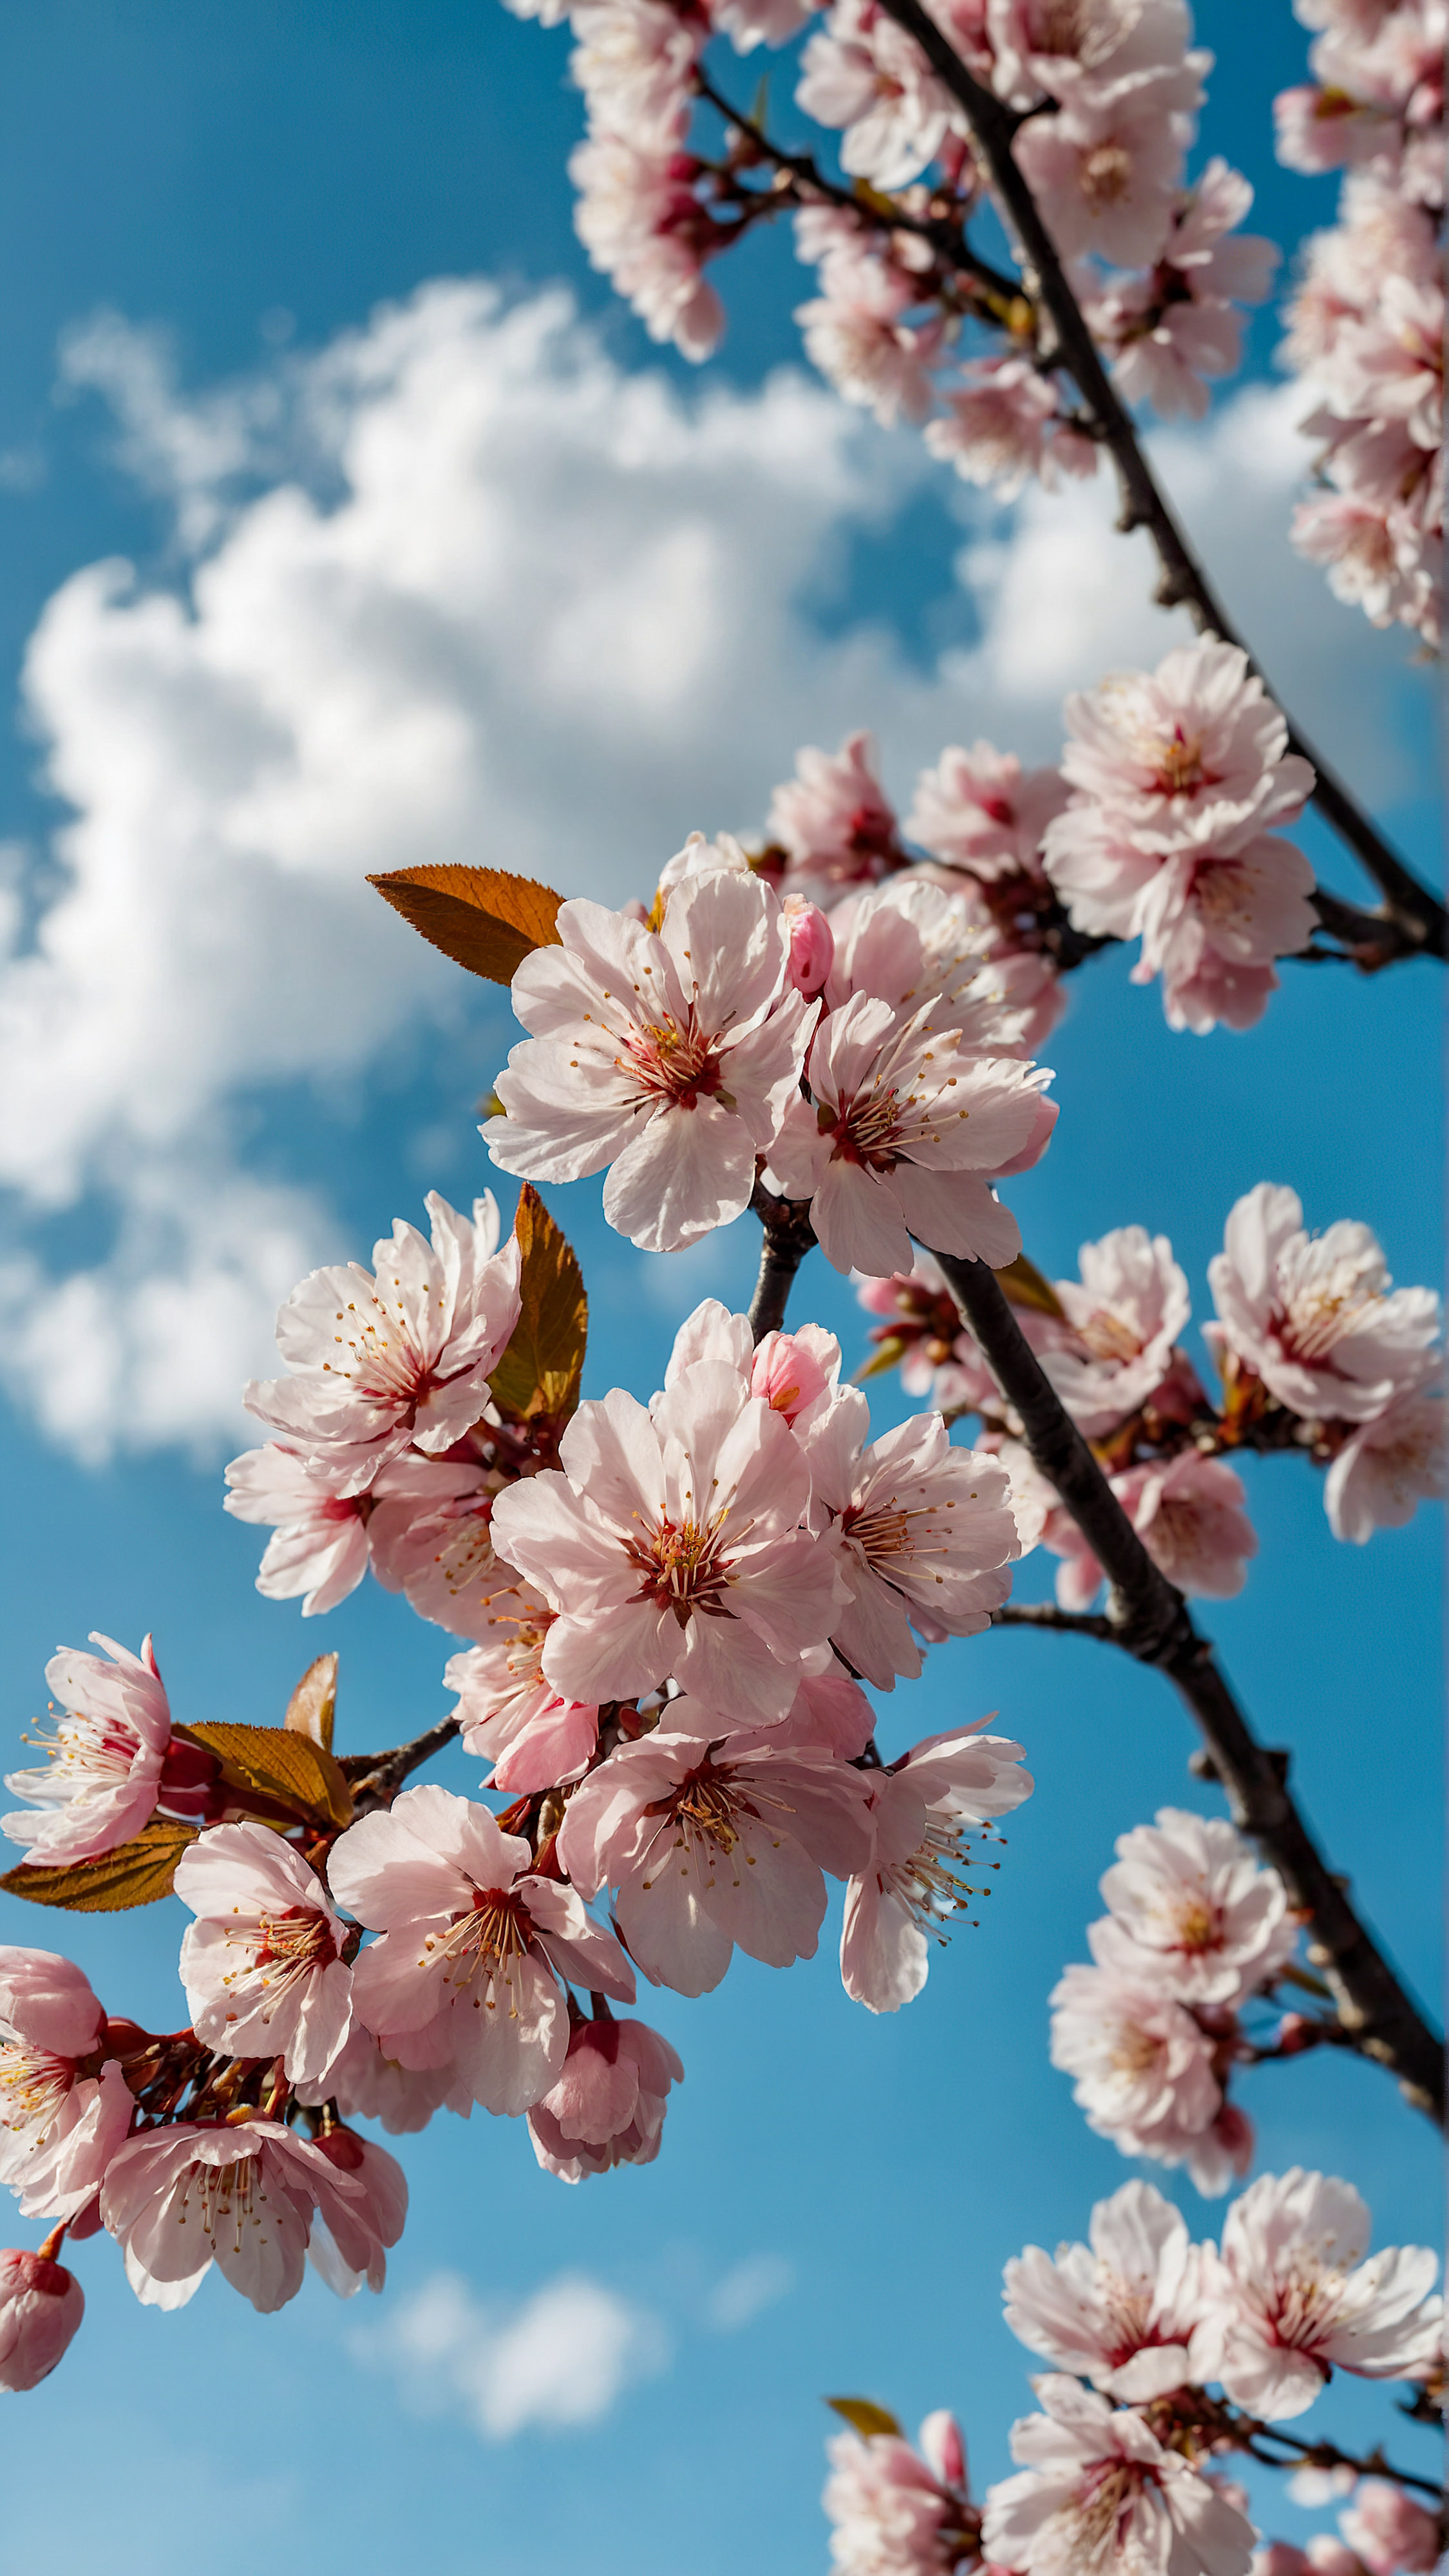 Ornez votre appareil avec la beauté sereine des cerisiers roses contre un arrière-plan d'un ciel bleu clair avec des nuages blancs duveteux avec notre beau fond d'écran mignon esthétique pour iPhone.